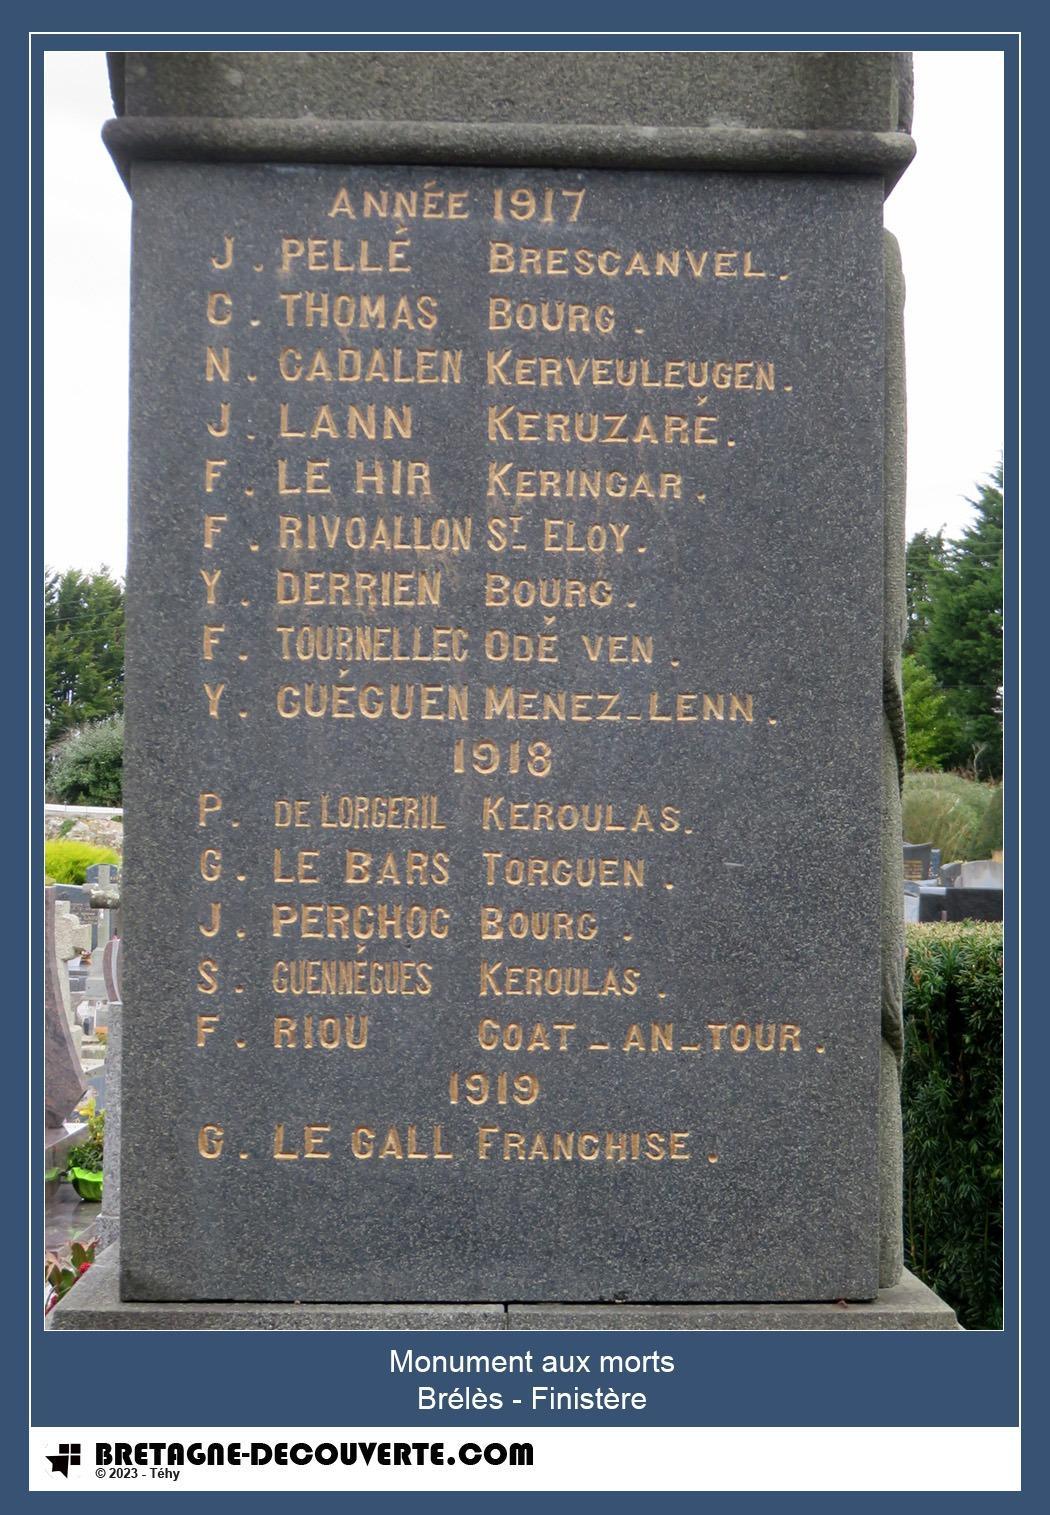 Les noms gravés sur le monument aux morts de Brélès